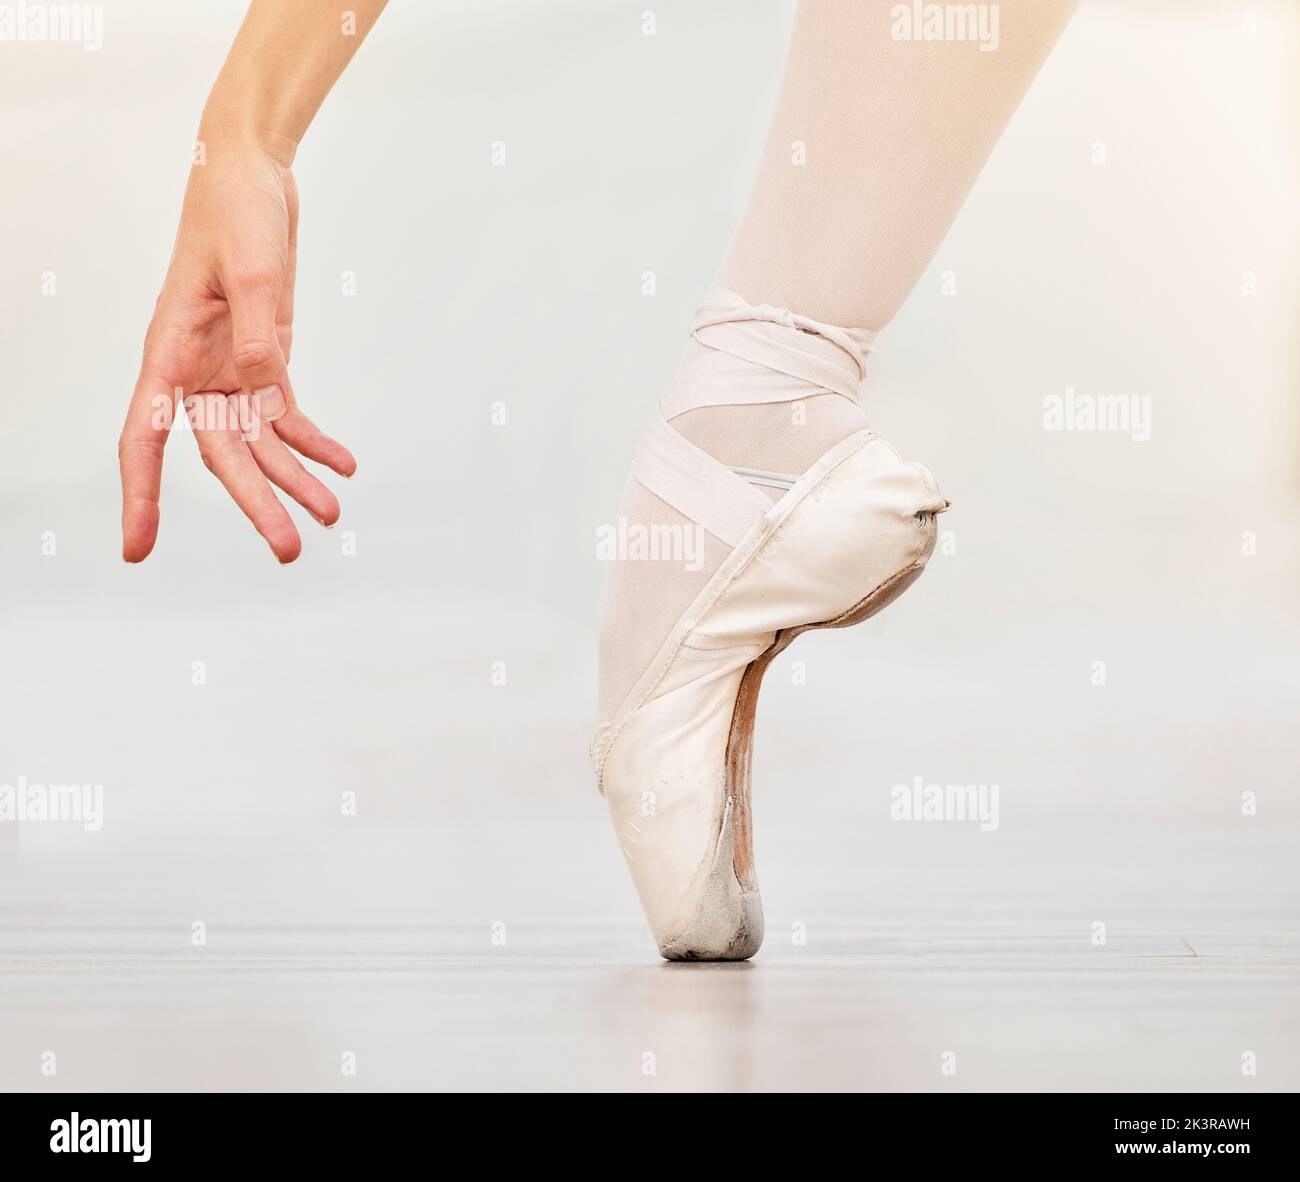 Nahaufnahme des Fußes des Tänzers auf dem Boden, des Ballettschuhs und der Hand, zeigen Haltung und Gleichgewicht beim Tanzunterricht. Zoom der Frau tanzen im Studio zu üben oder auf der Bühne Stockfoto